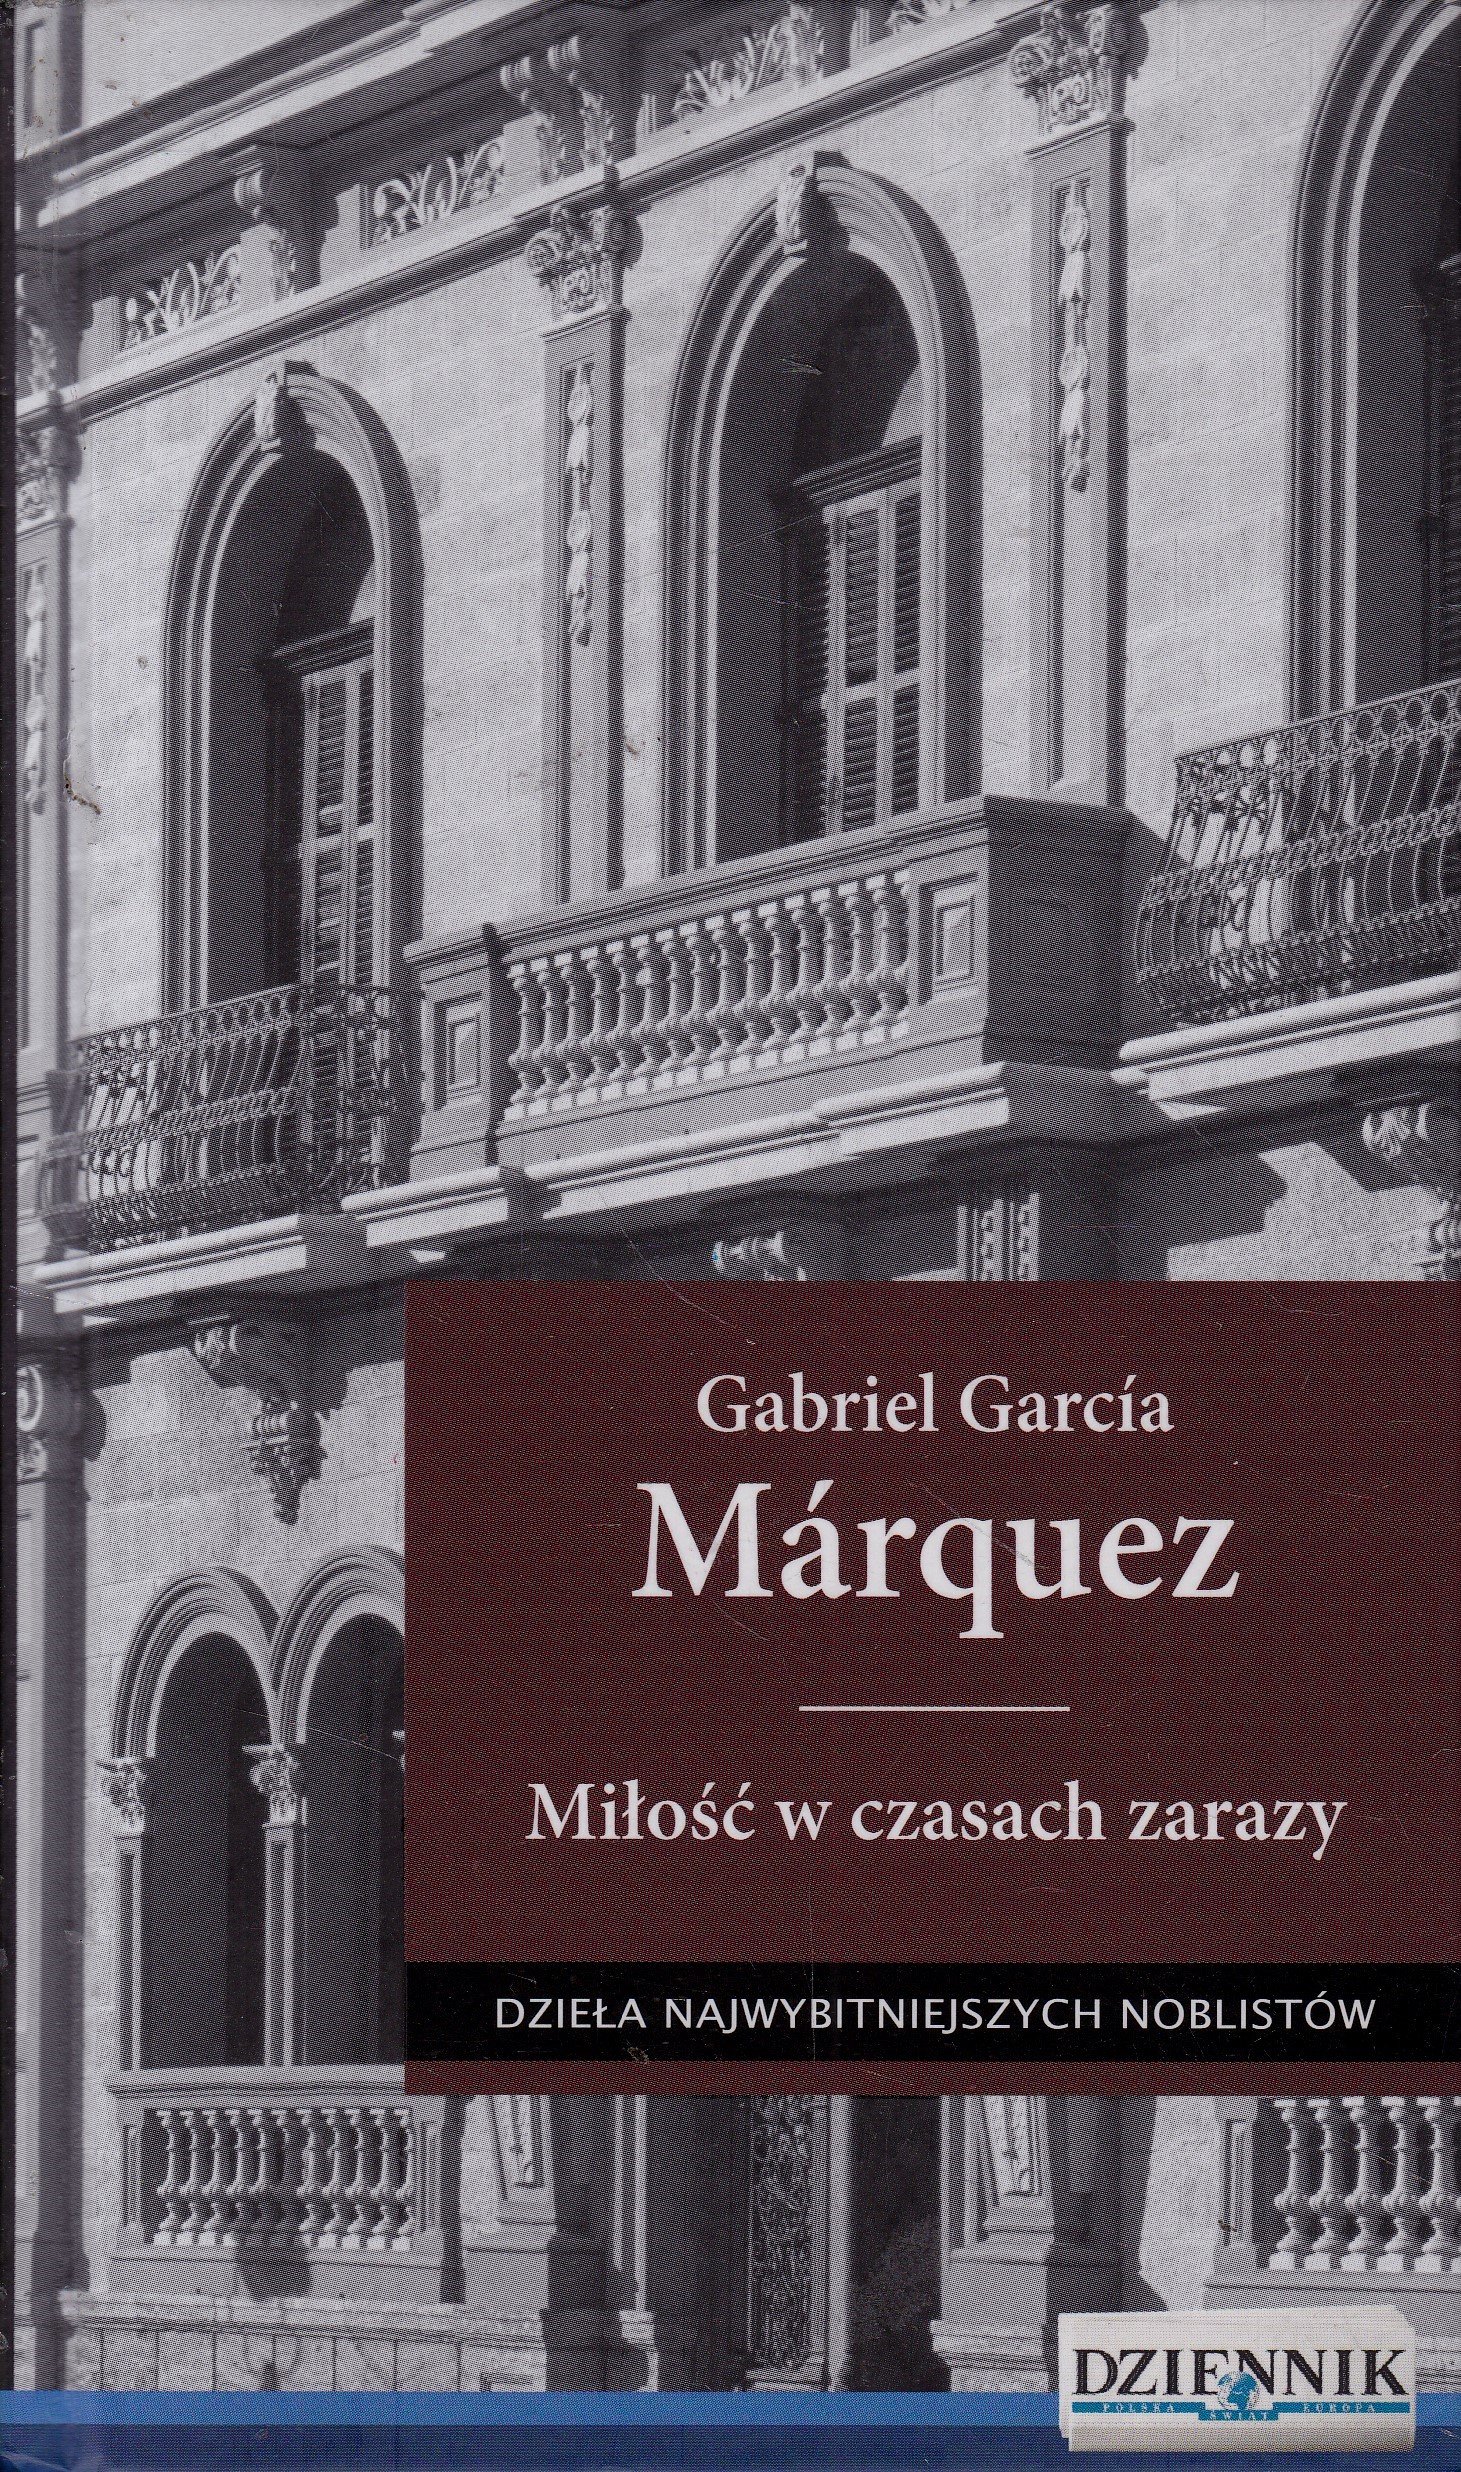 MIÅOÅÄ W CZASACH ZARAZY GABRIEL GARCIA MARQUEZ